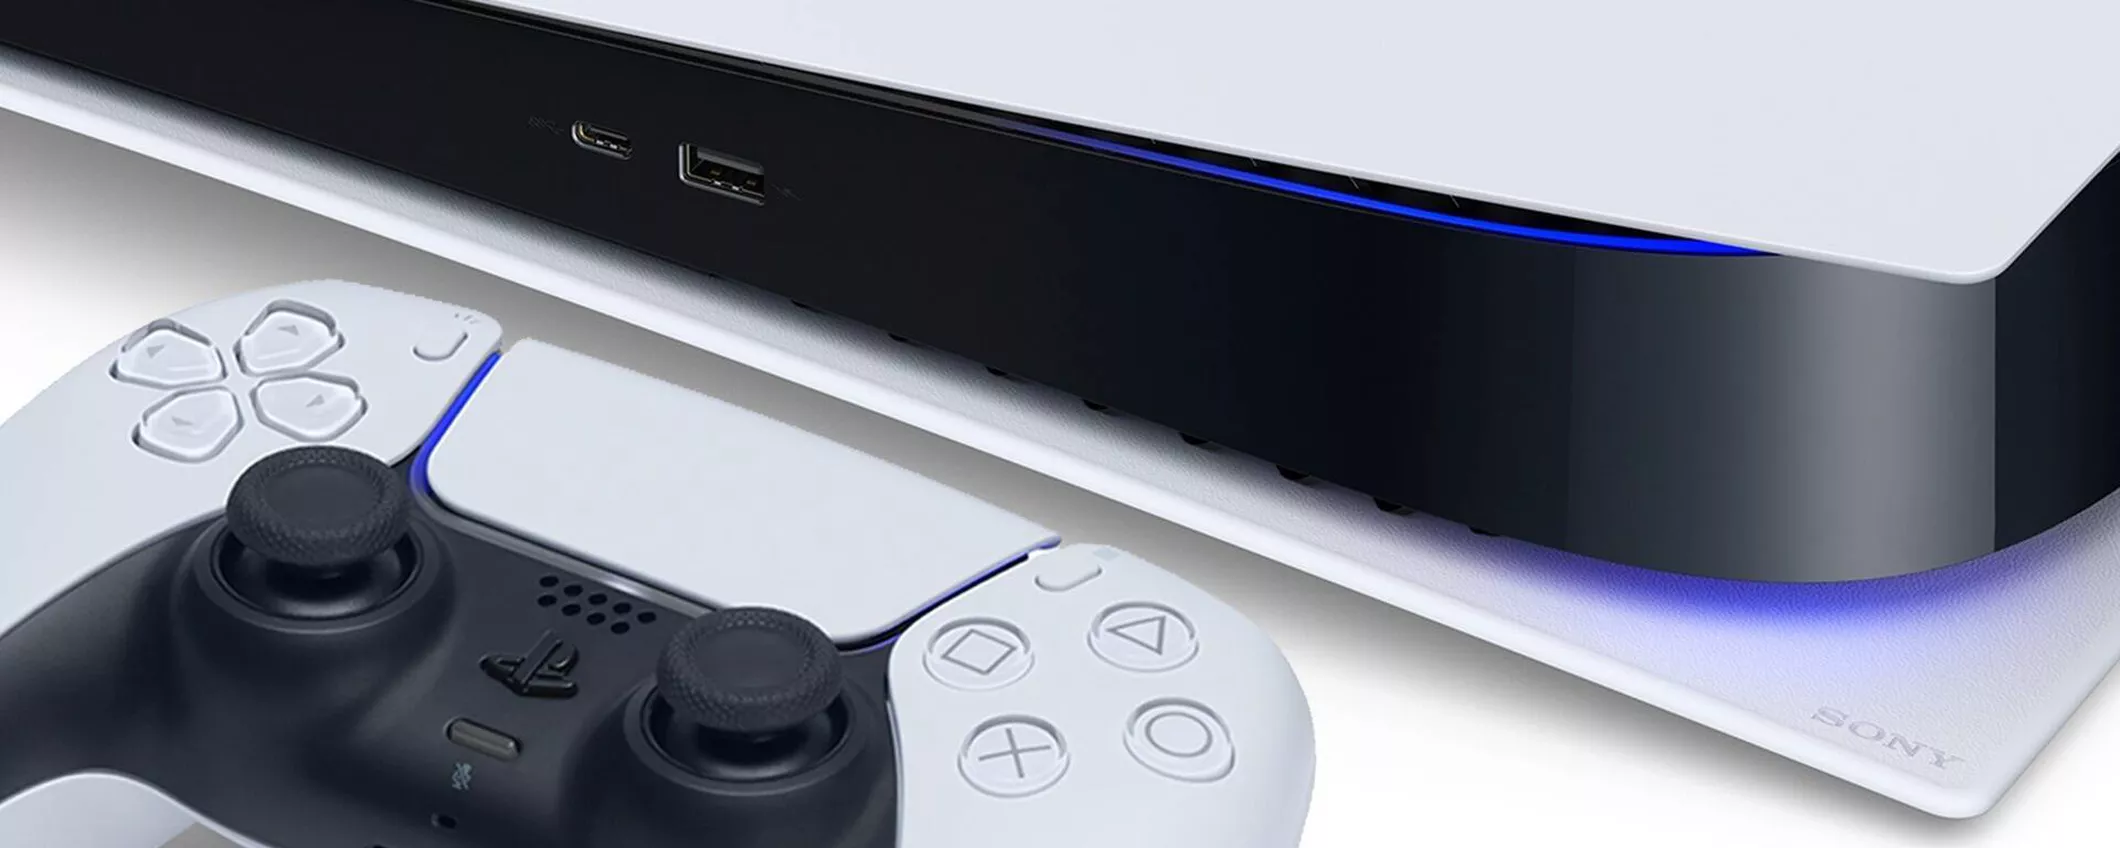 PlayStation 5, eBay la sconta e la spedisce SUBITO con consegna entro NATALE